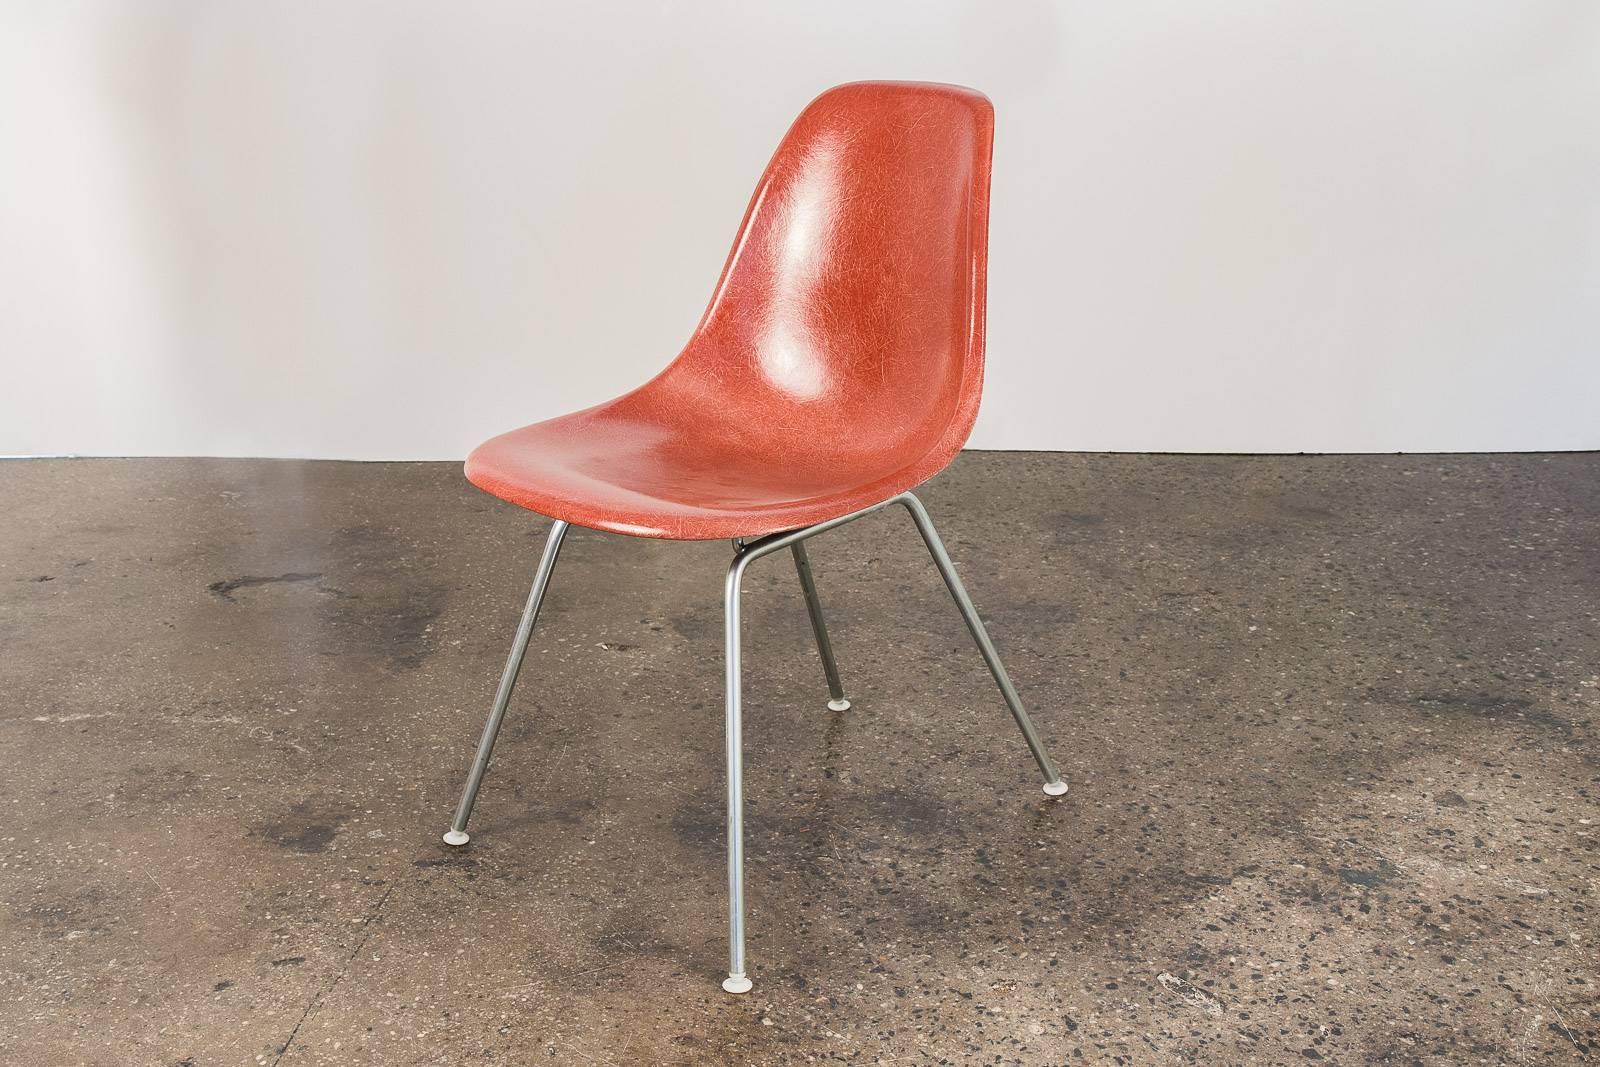 Chaises originales Eames des années 1960 en fibre de verre terracotta avec bases en H originales, conçues par Charles et Ray Eames pour Herman Miller. La rare coquille en terre cuite a sa finition originale avec une texture de fil distincte. Montage